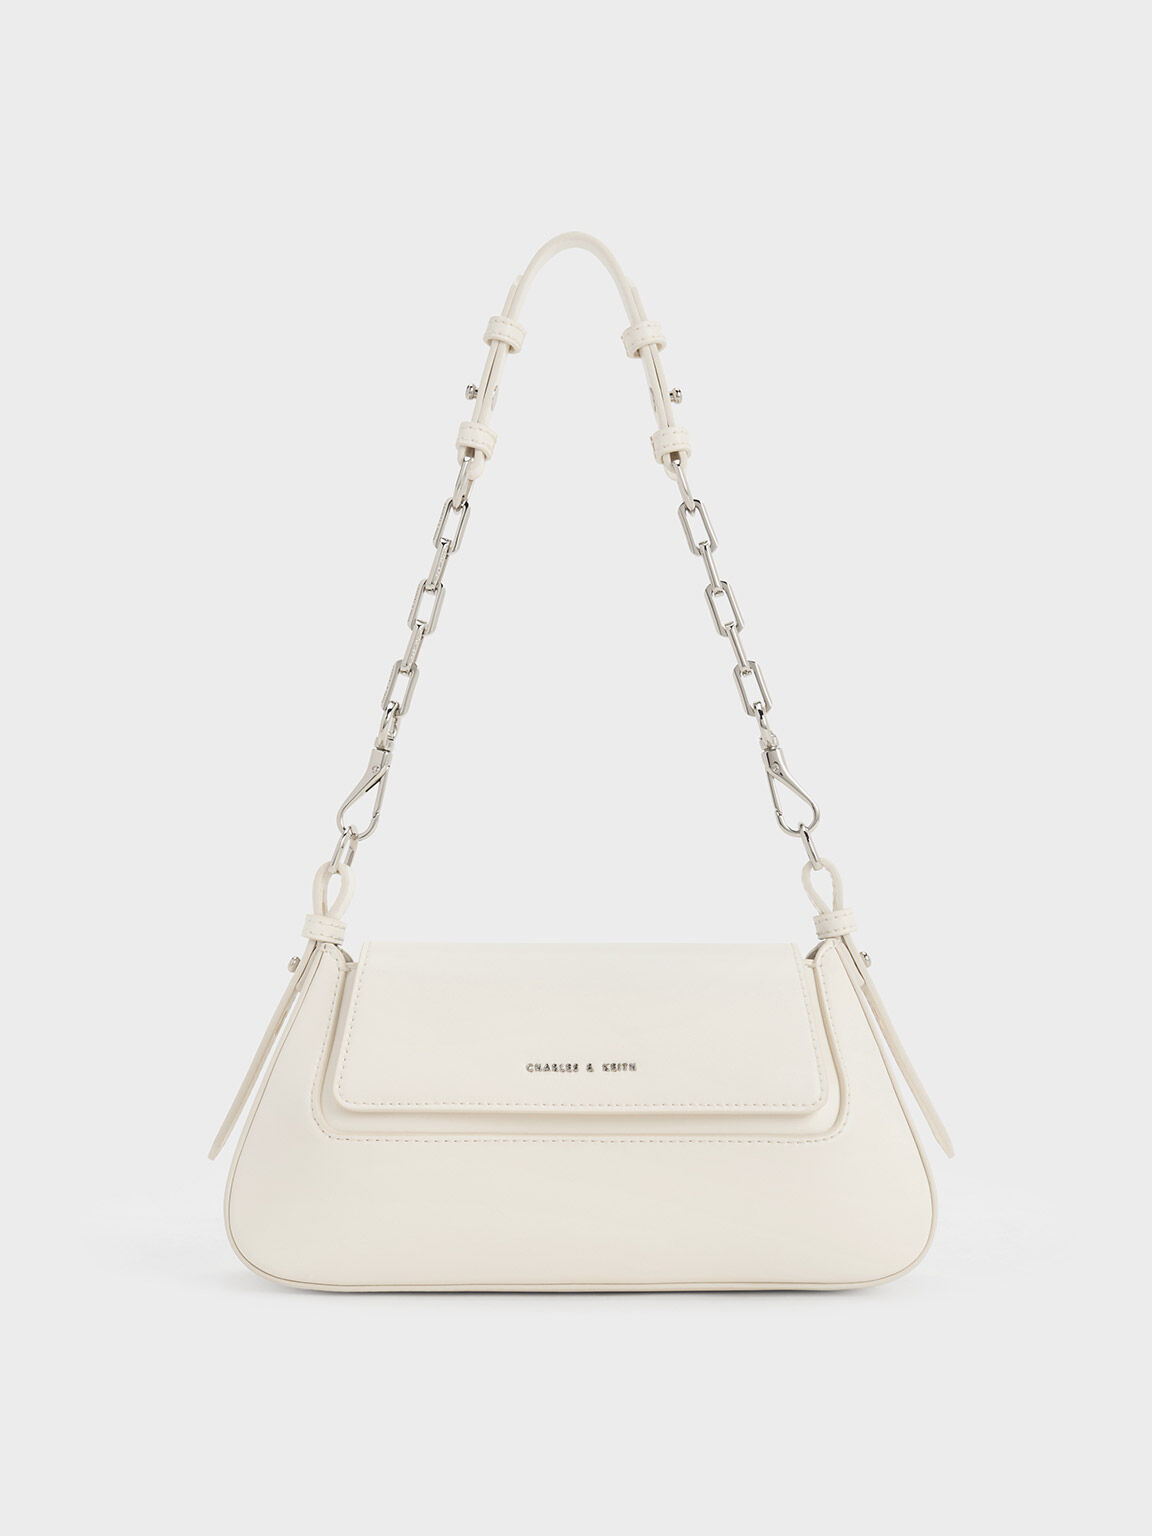 Fashion Letter Women's Square Handbags Brand Designer Shoulder Bags Cross Body White